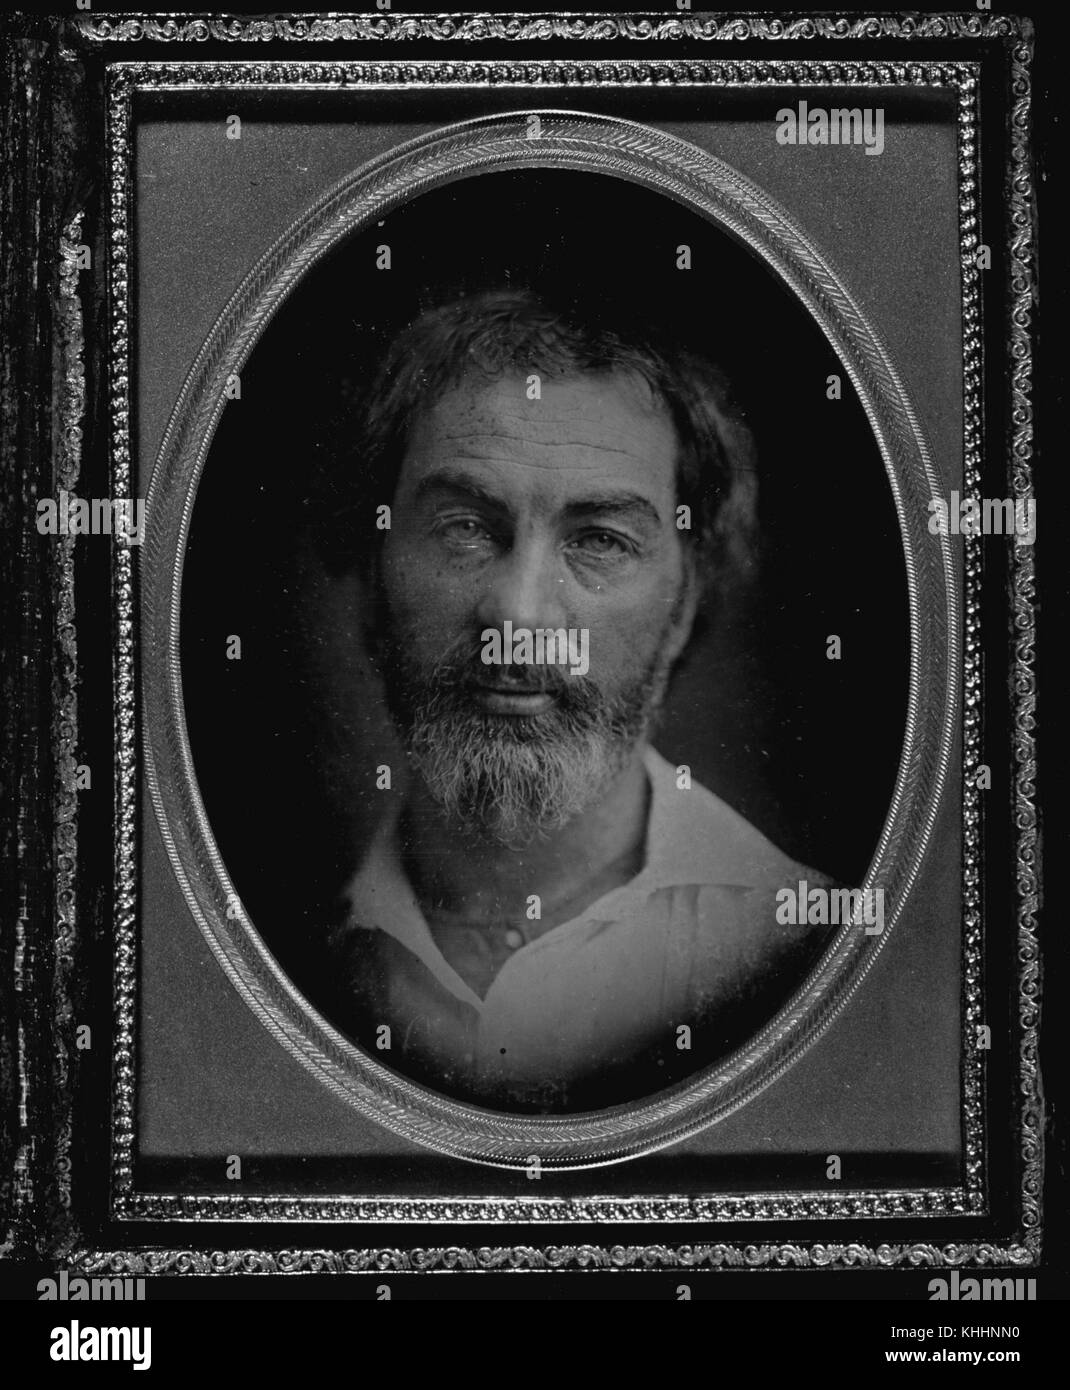 Portrait ovale et encadré de style daguerréotype de Walt Whitman, poète, essayiste et journaliste américain, 1853. De la bibliothèque publique de New York. Banque D'Images